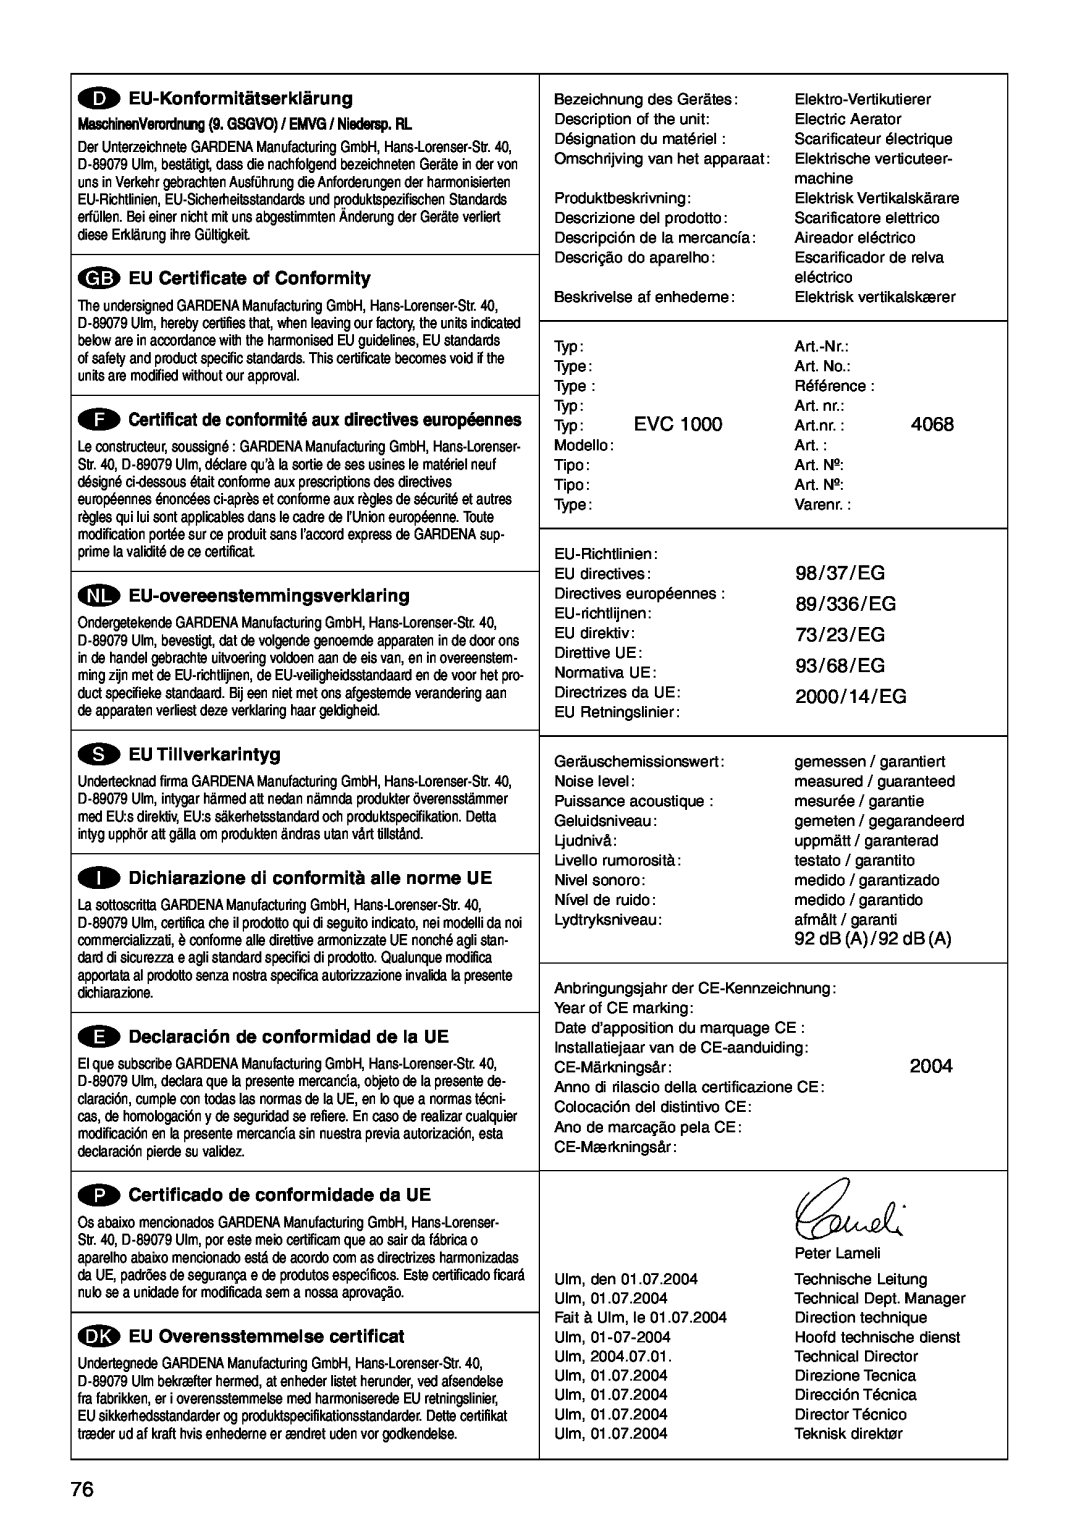 Gardena EVC1000 98/37/EG, 89/336/EG, 73/23/EG, 93/68/EG, 2000/14/EG, F Certificat de conformité aux directives européennes 